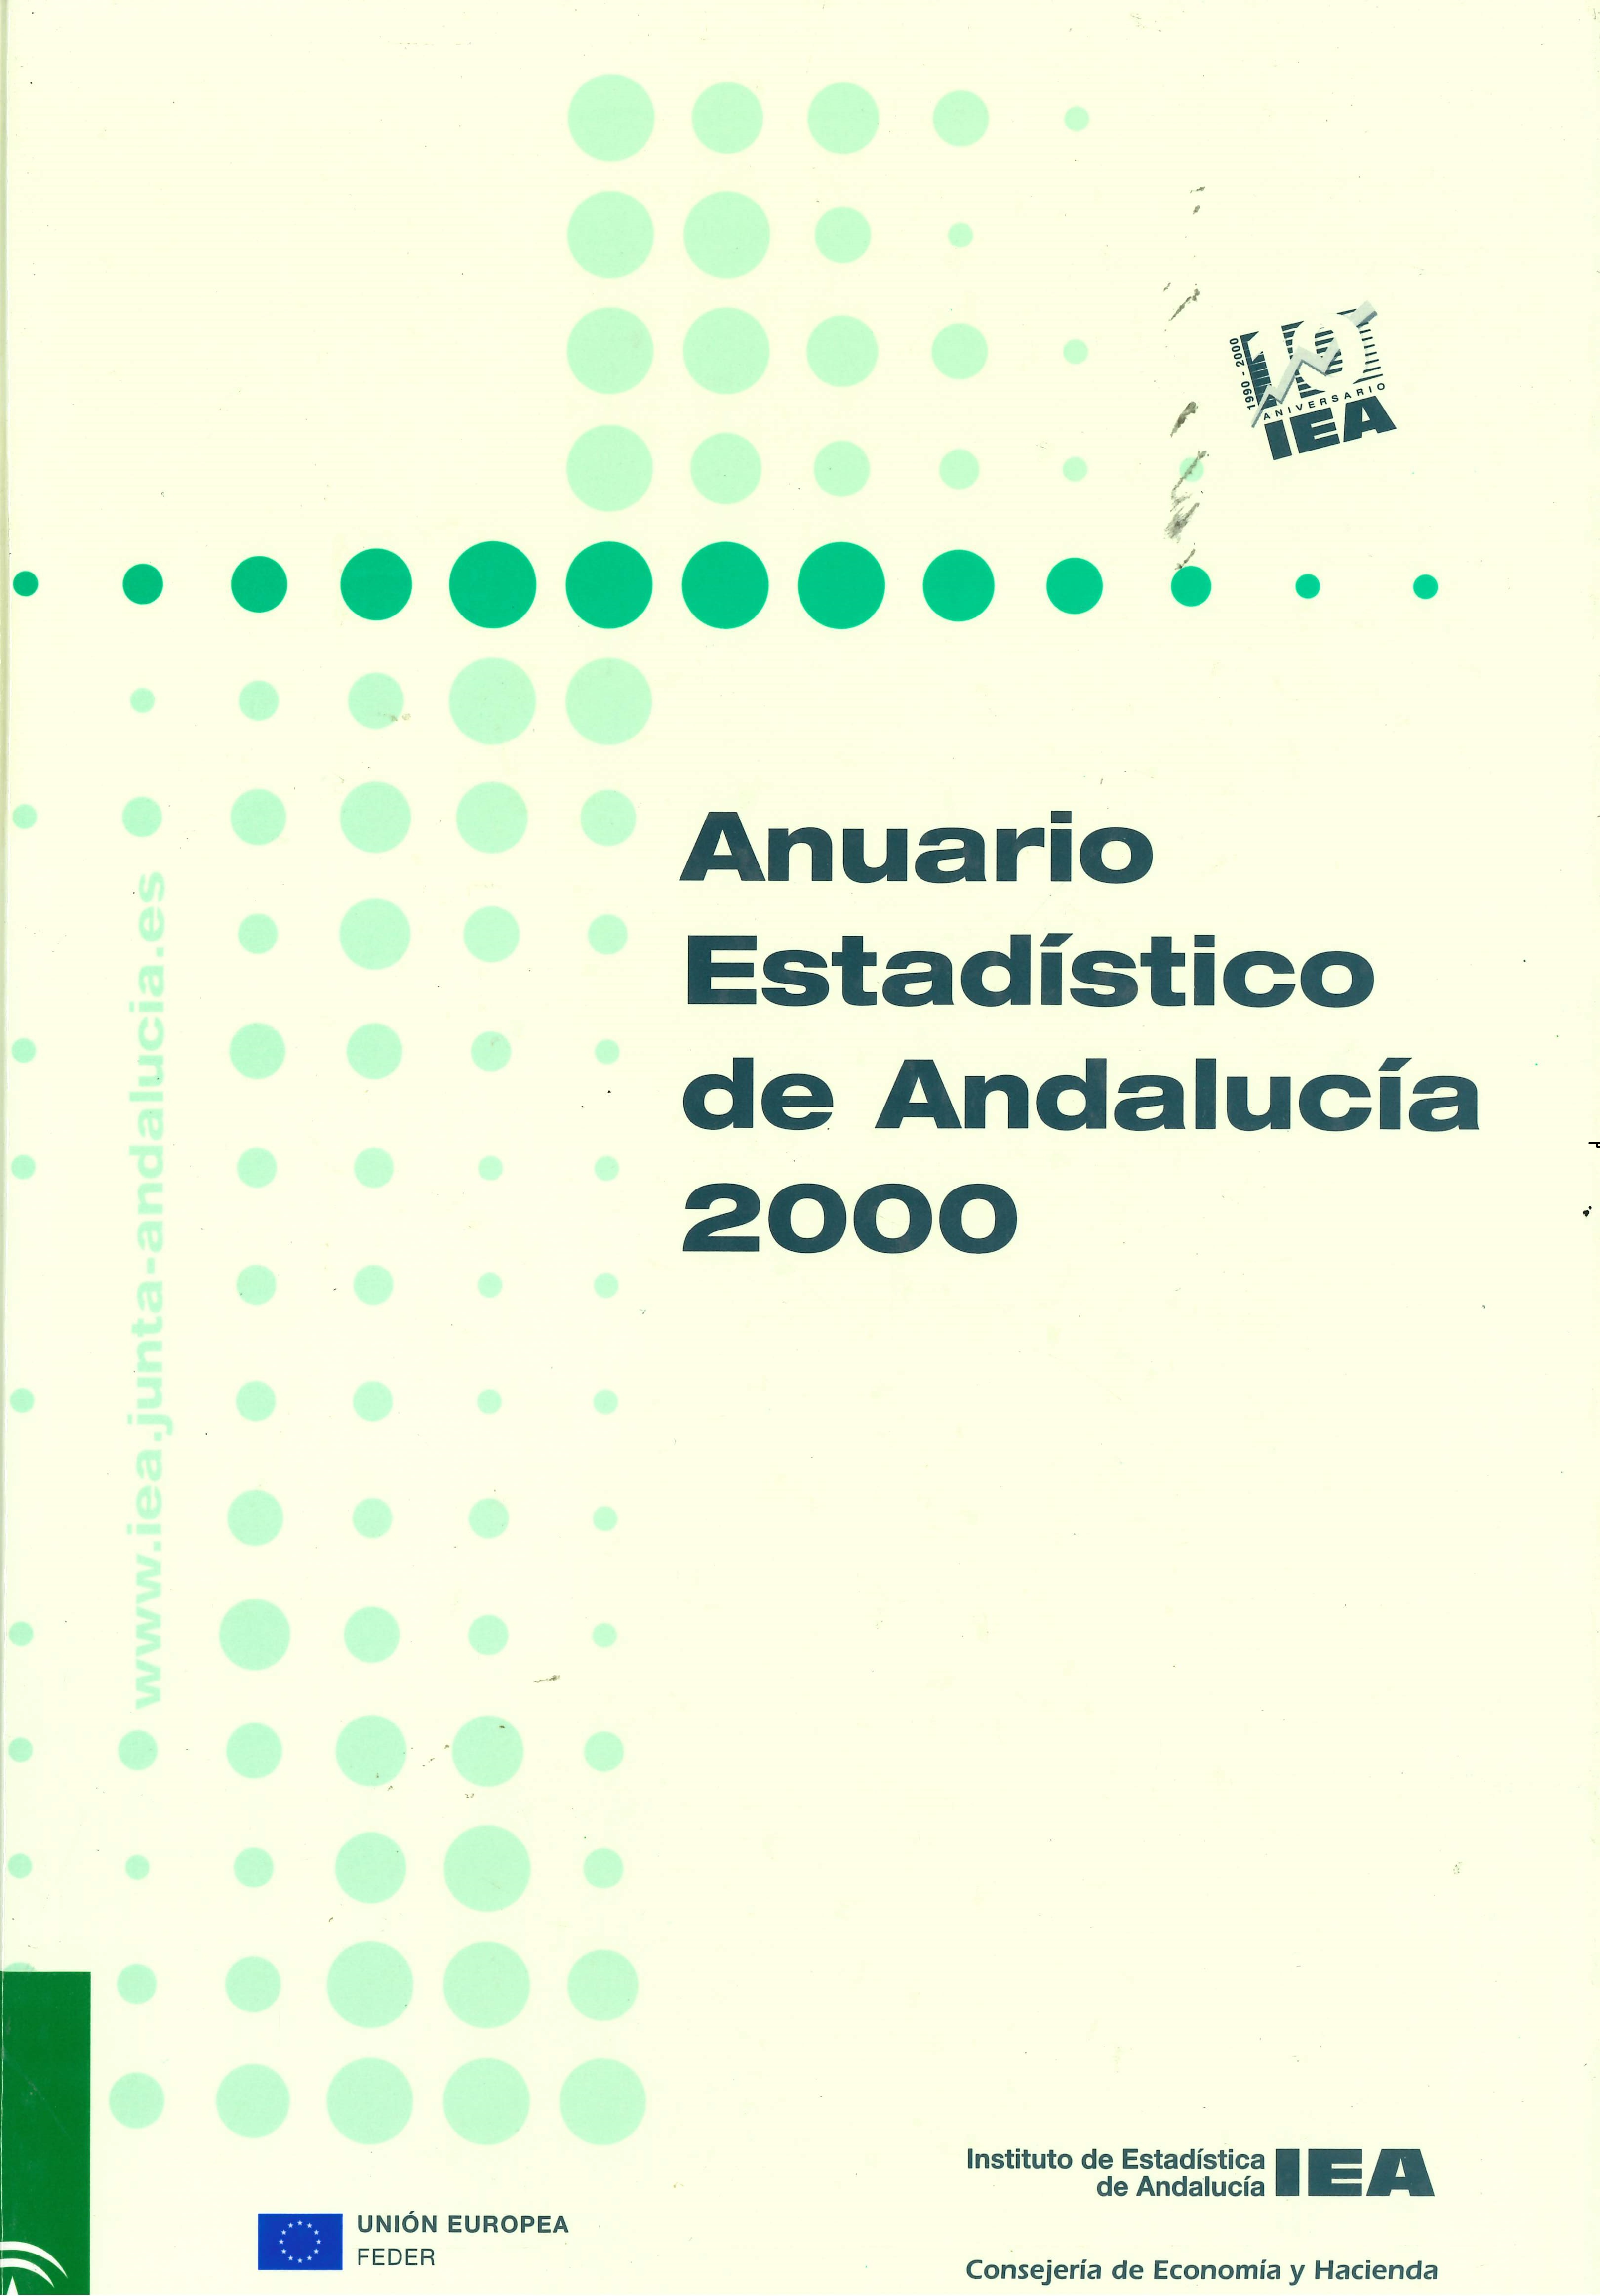 Imagen representativa de la publicación Anuario estadístico de Andalucía 2000